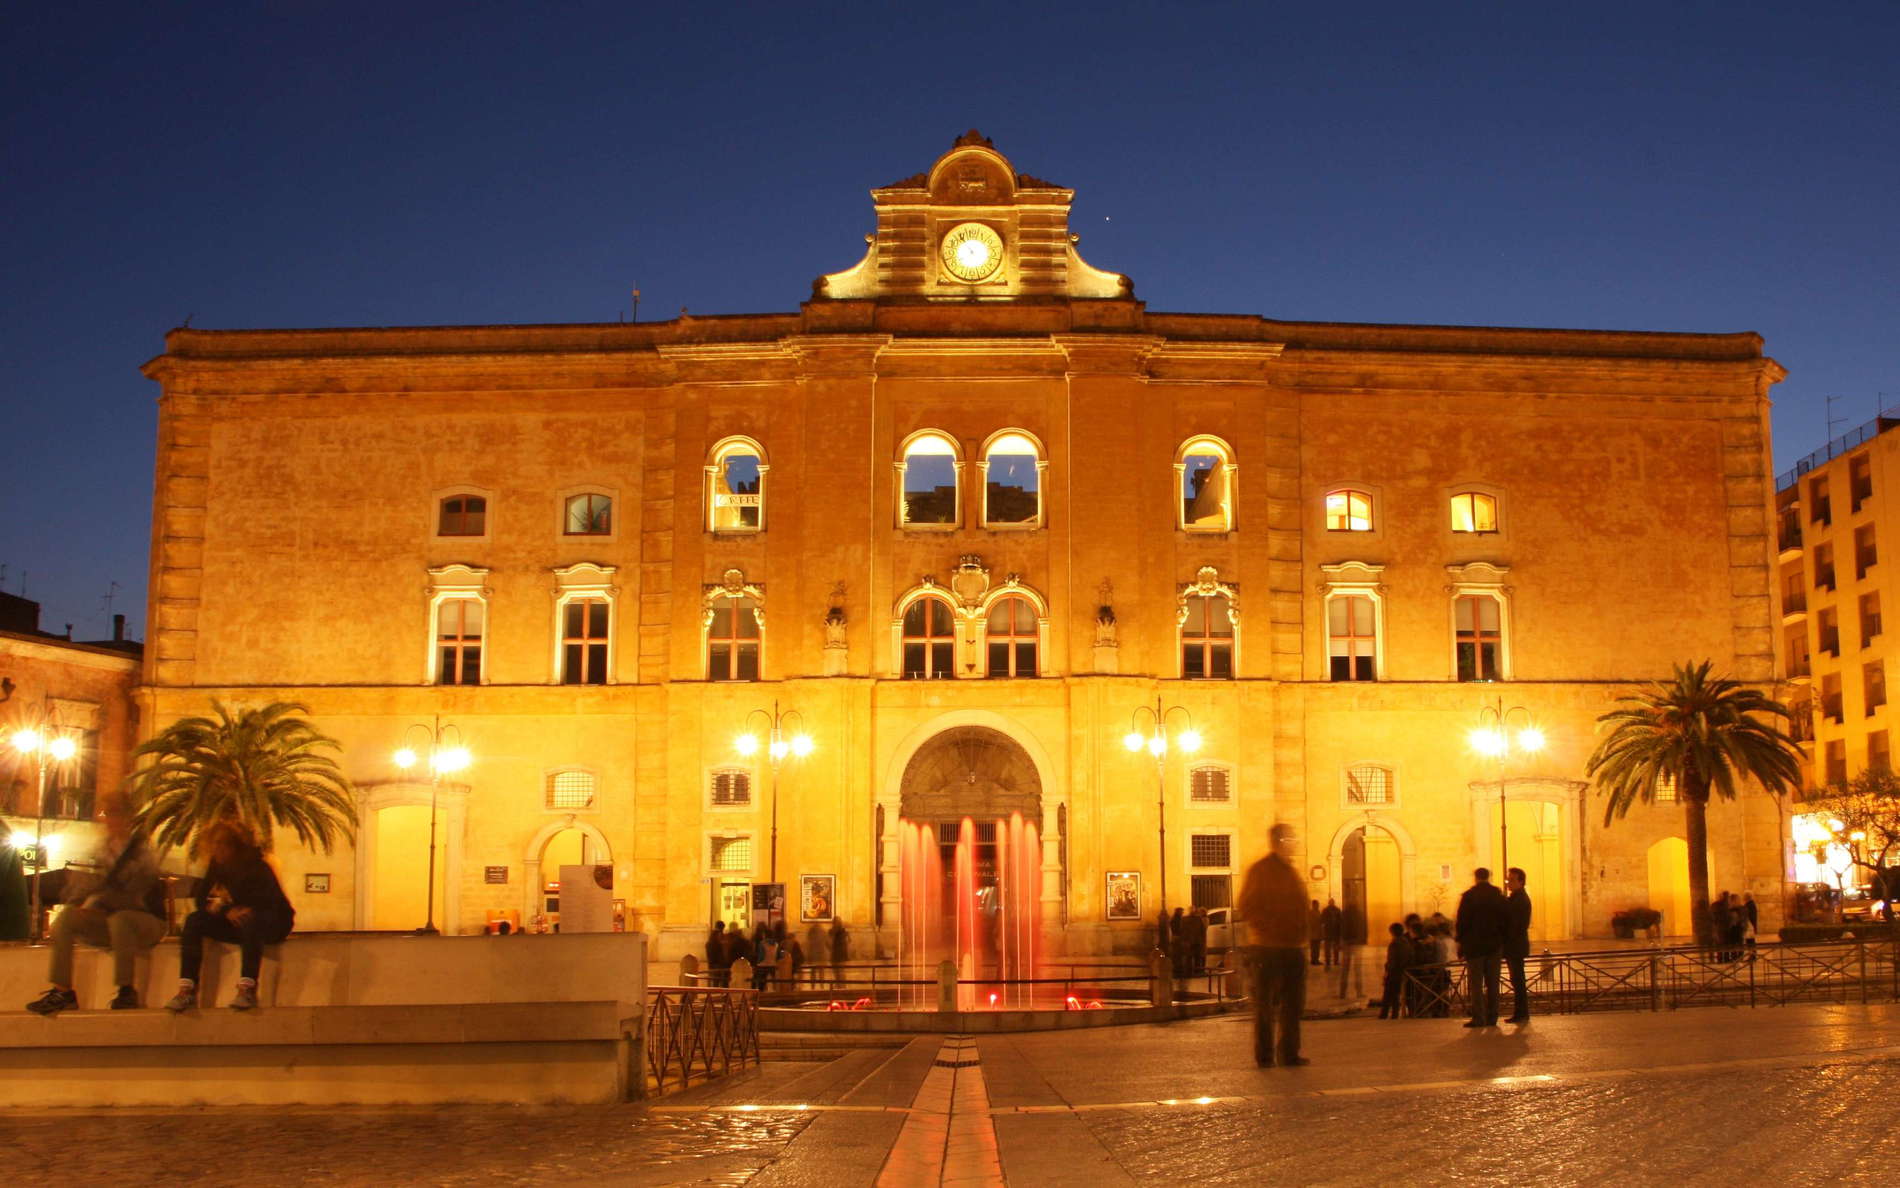 Matera | Palazzo dell'Annunziata at night